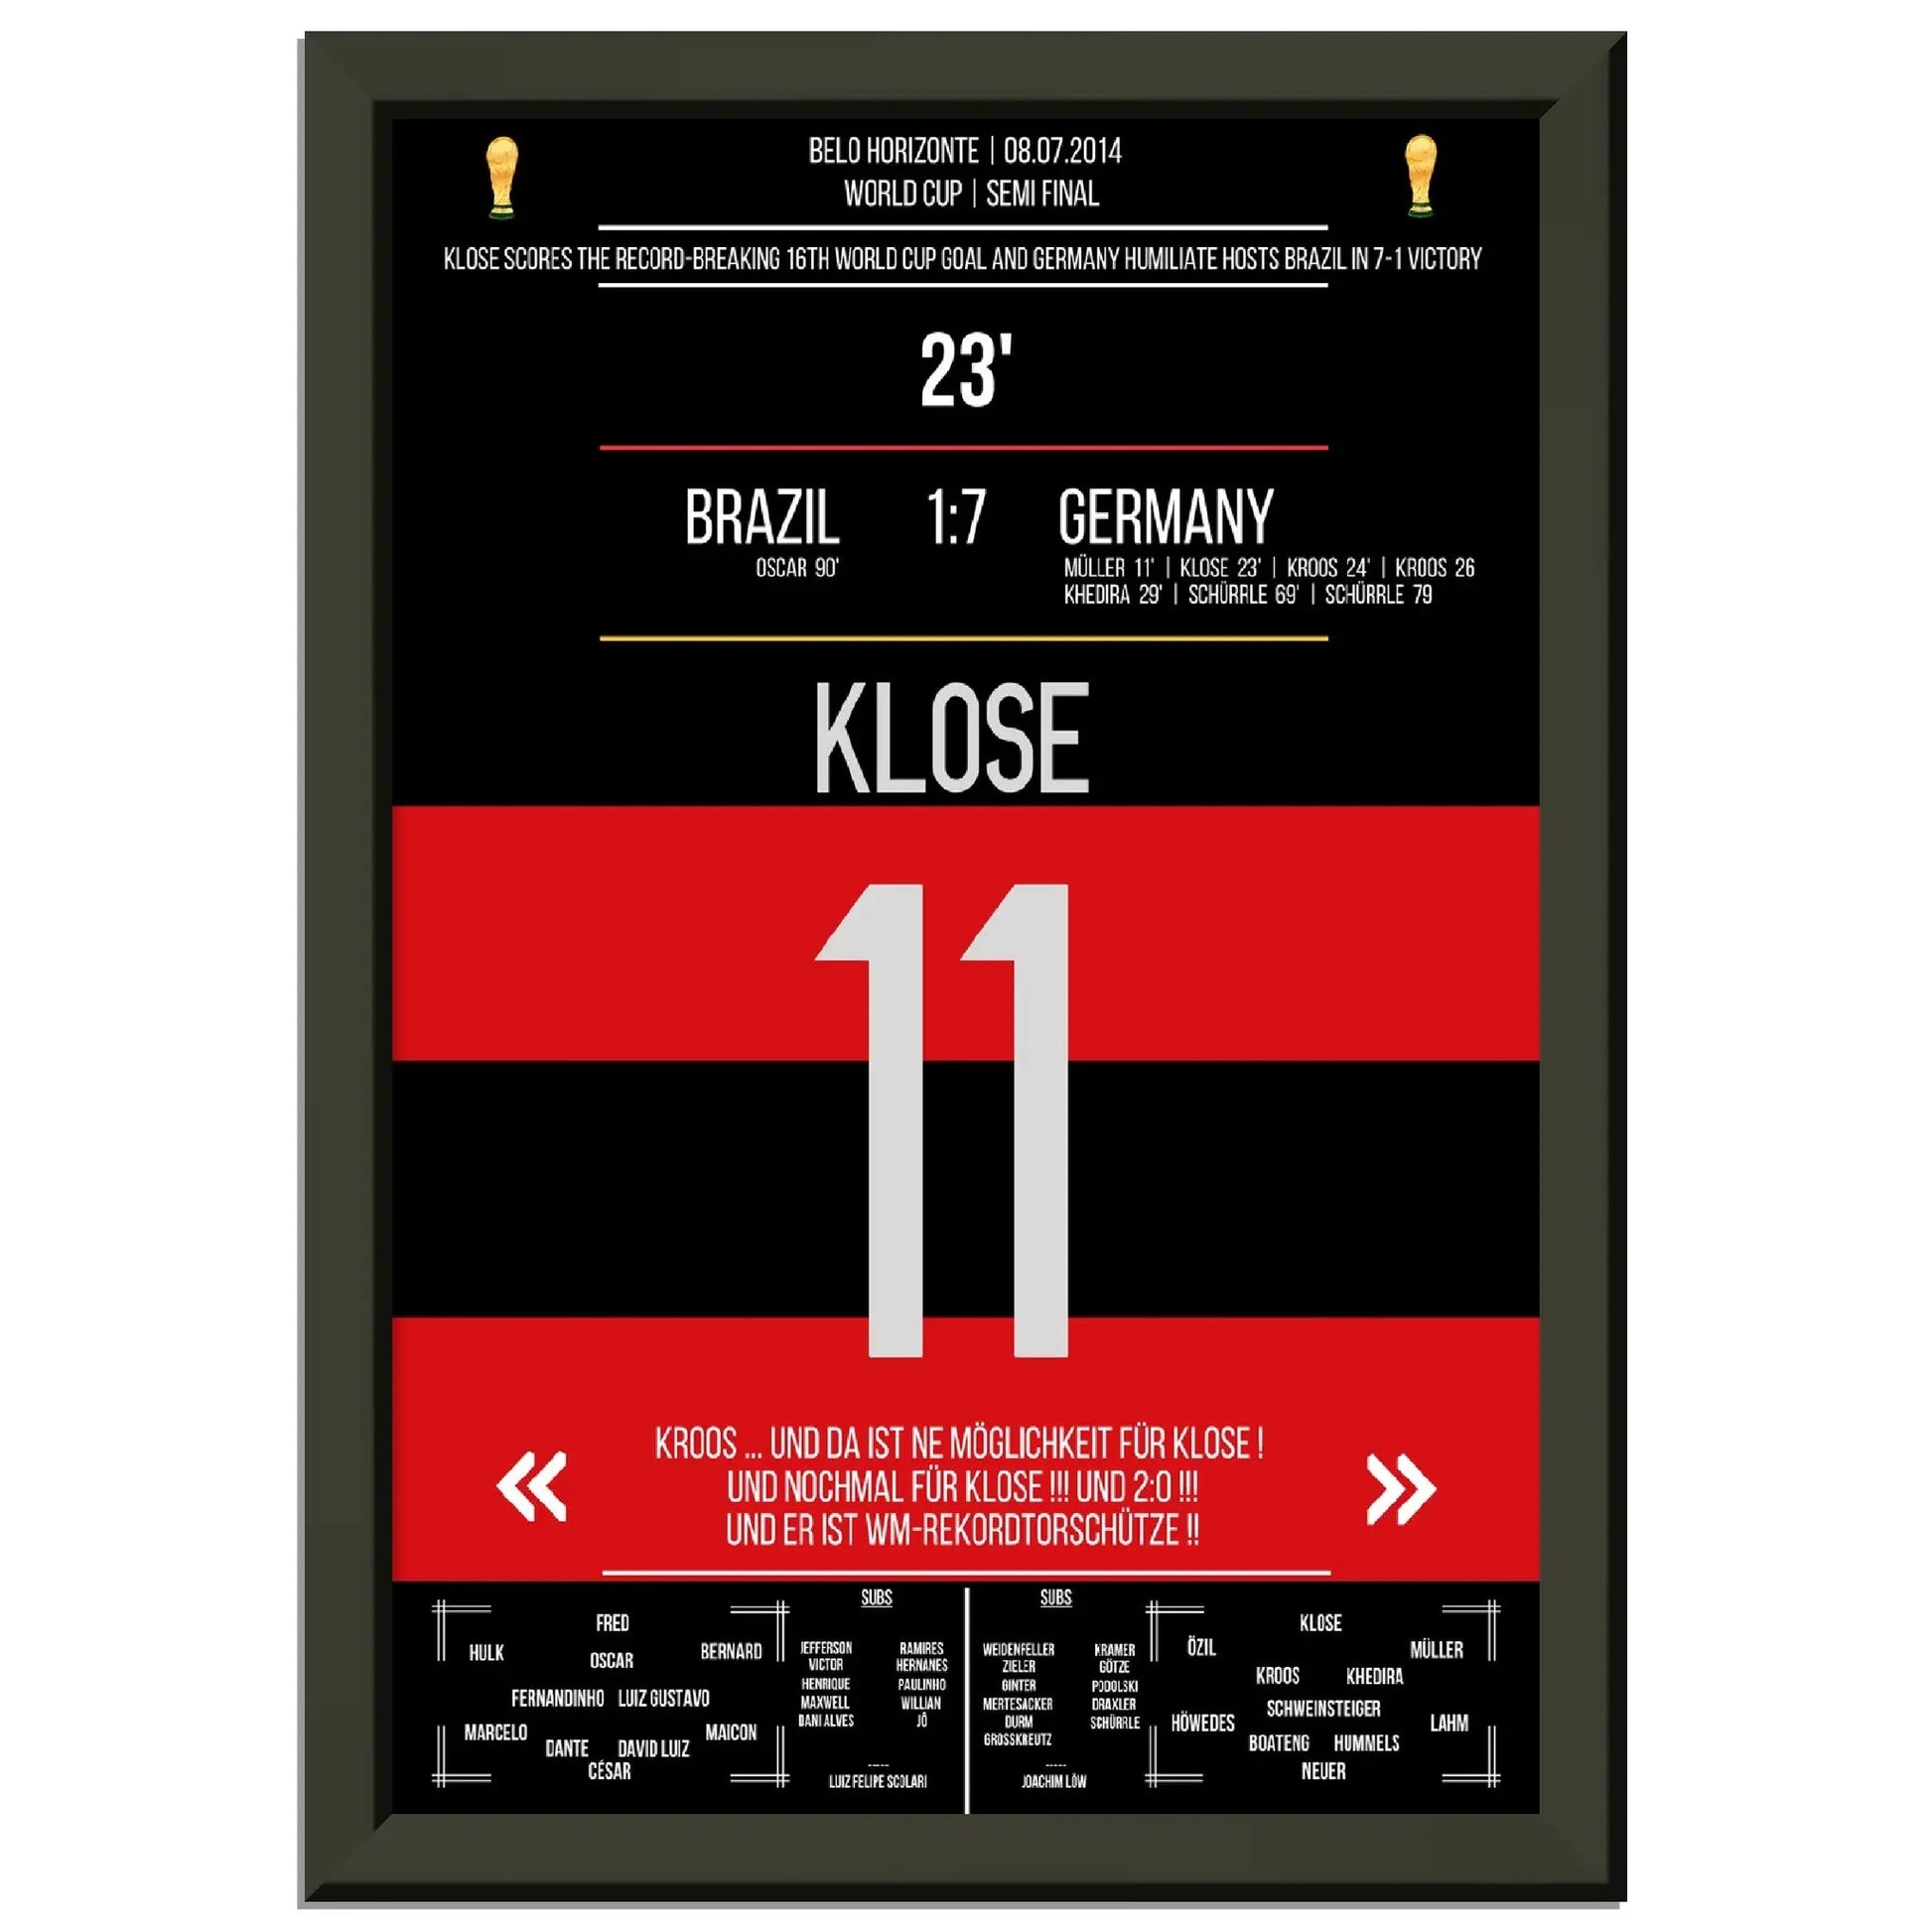 Kloses WM-Rekordtor im 7-1 Sieg Deutschland - Brasilien 2014 